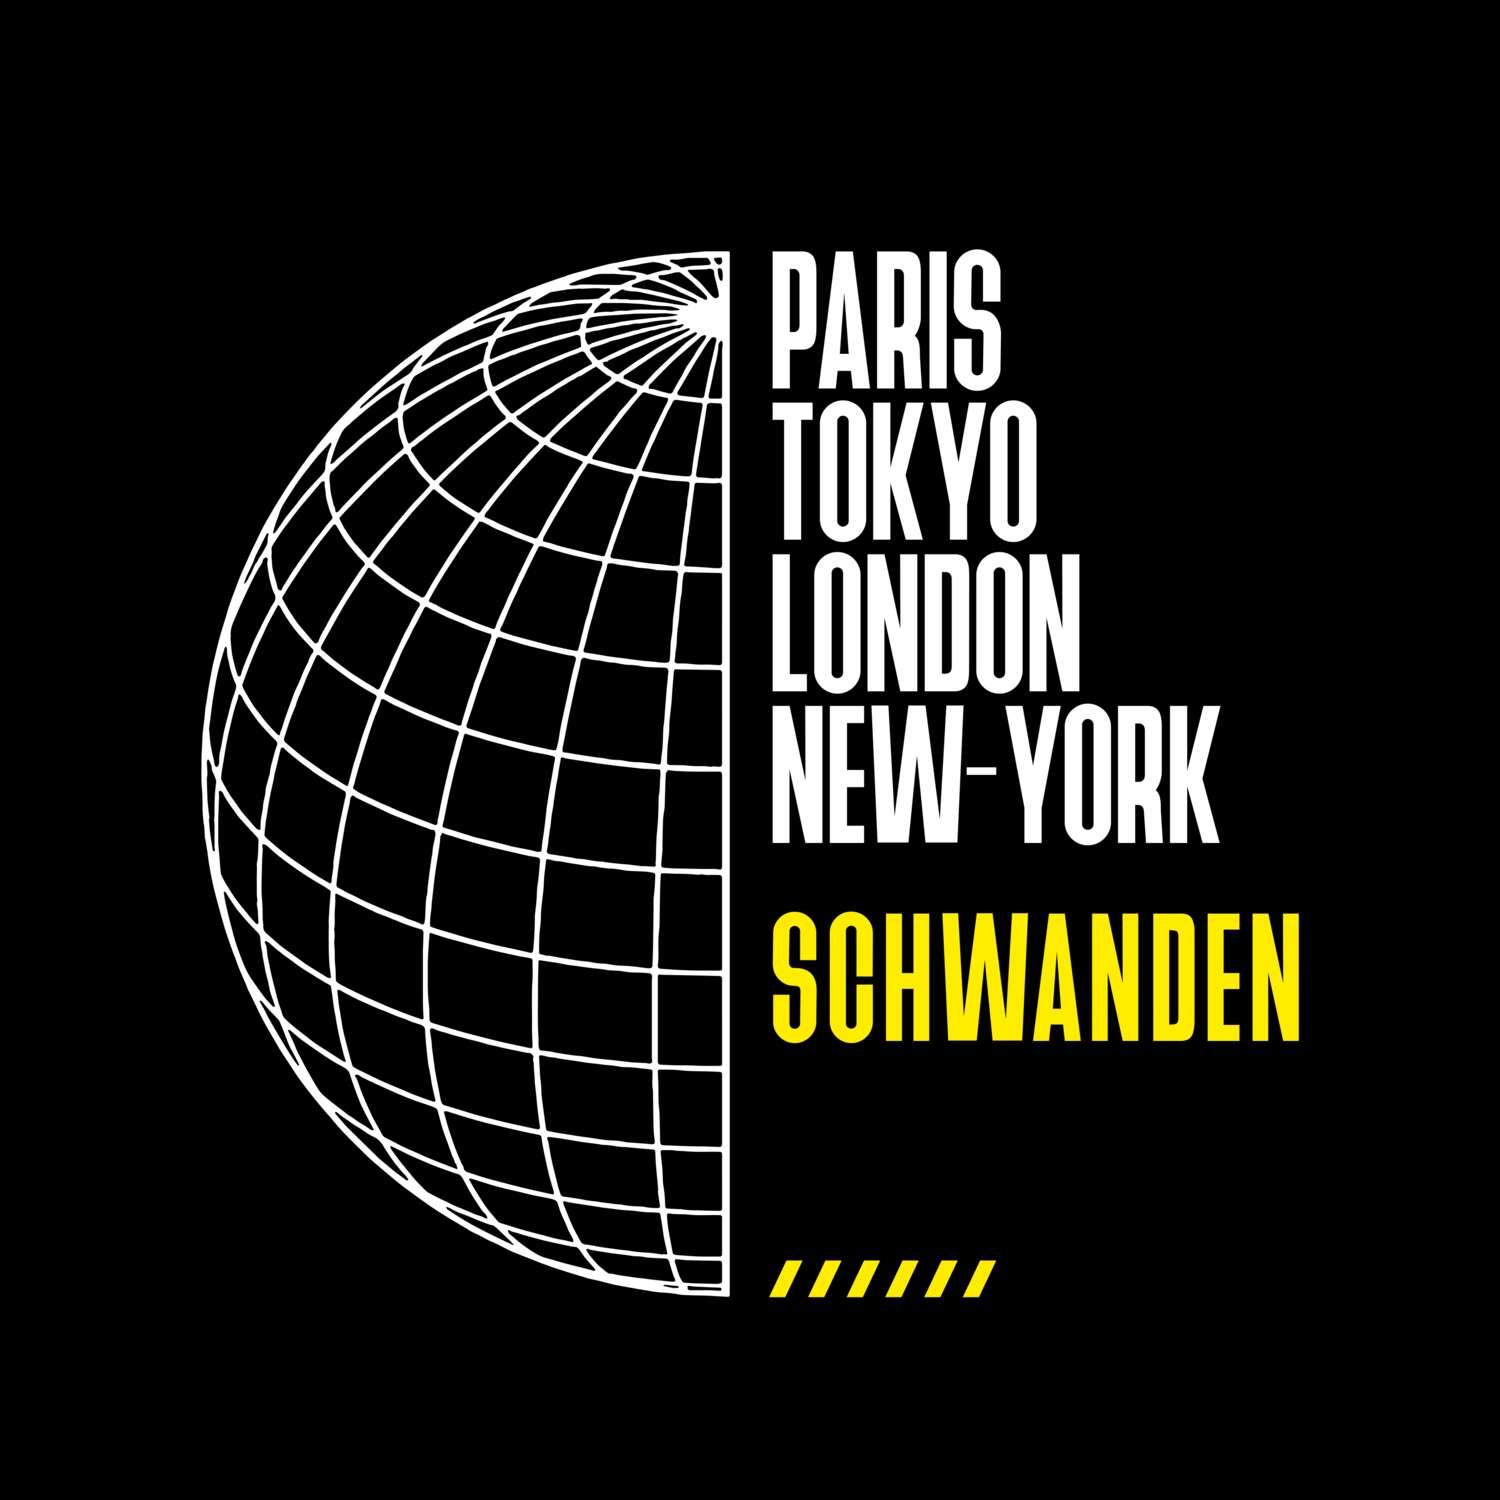 Schwanden T-Shirt »Paris Tokyo London«